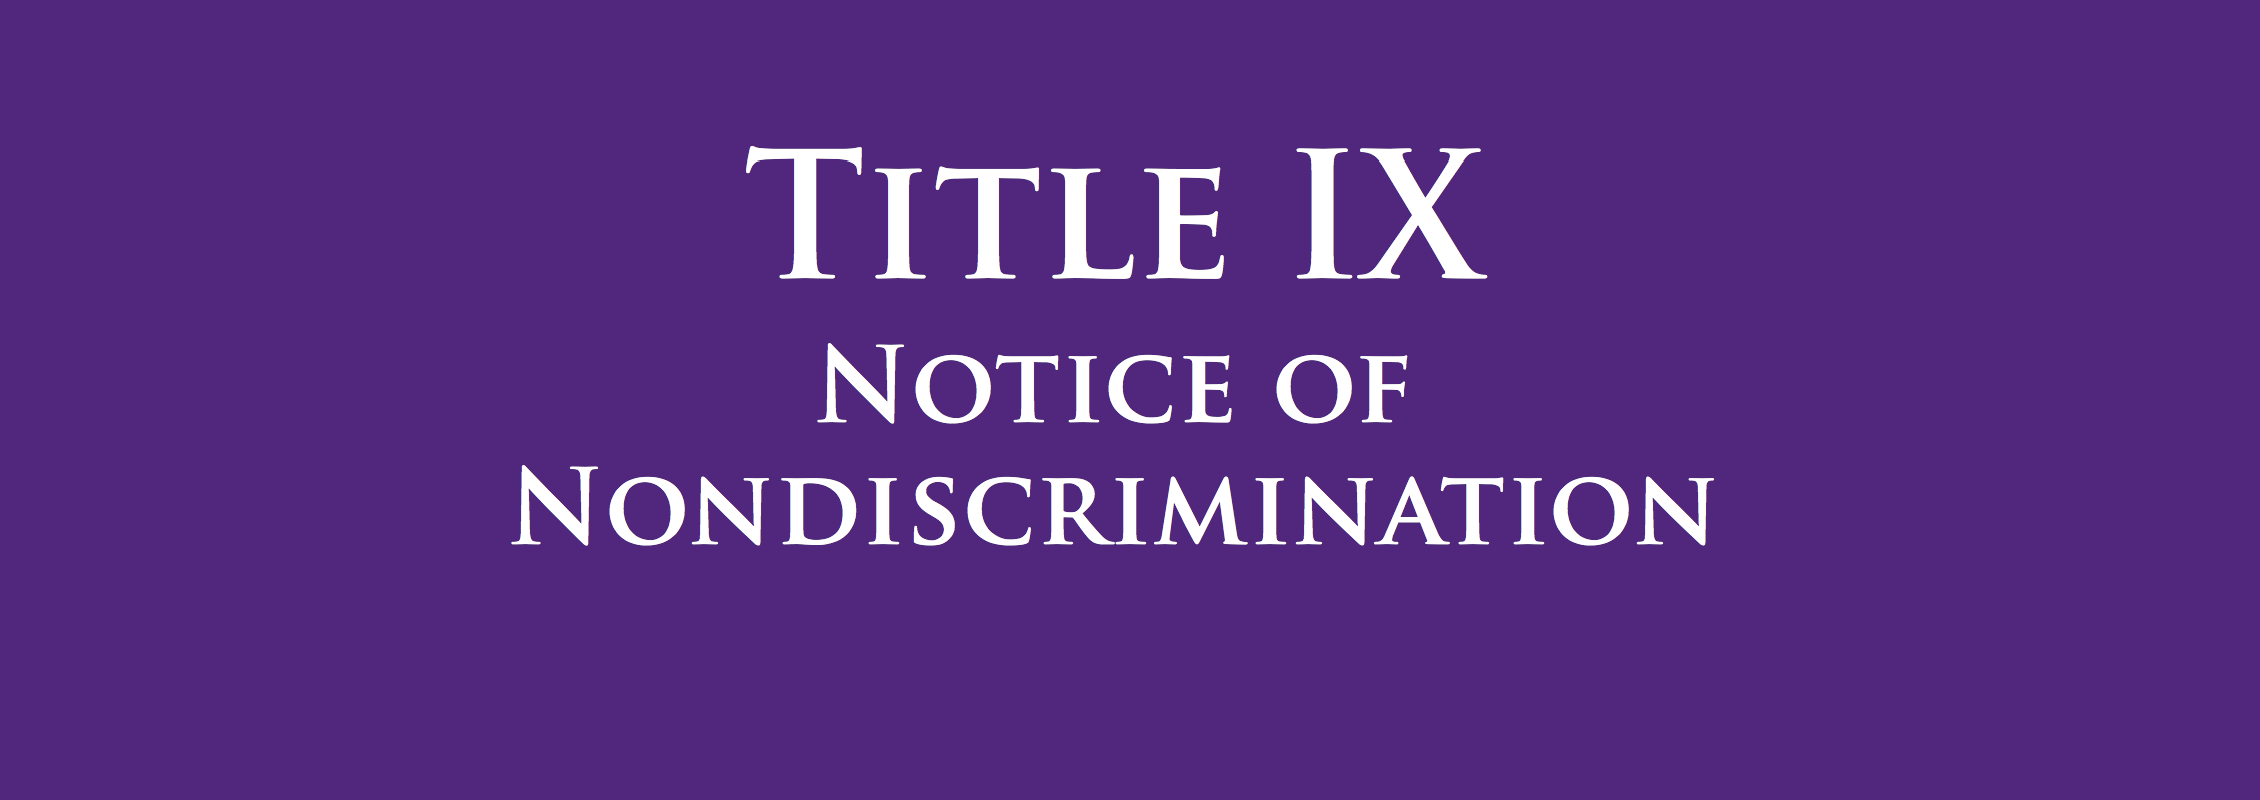 Title IX Notice of Discrimination